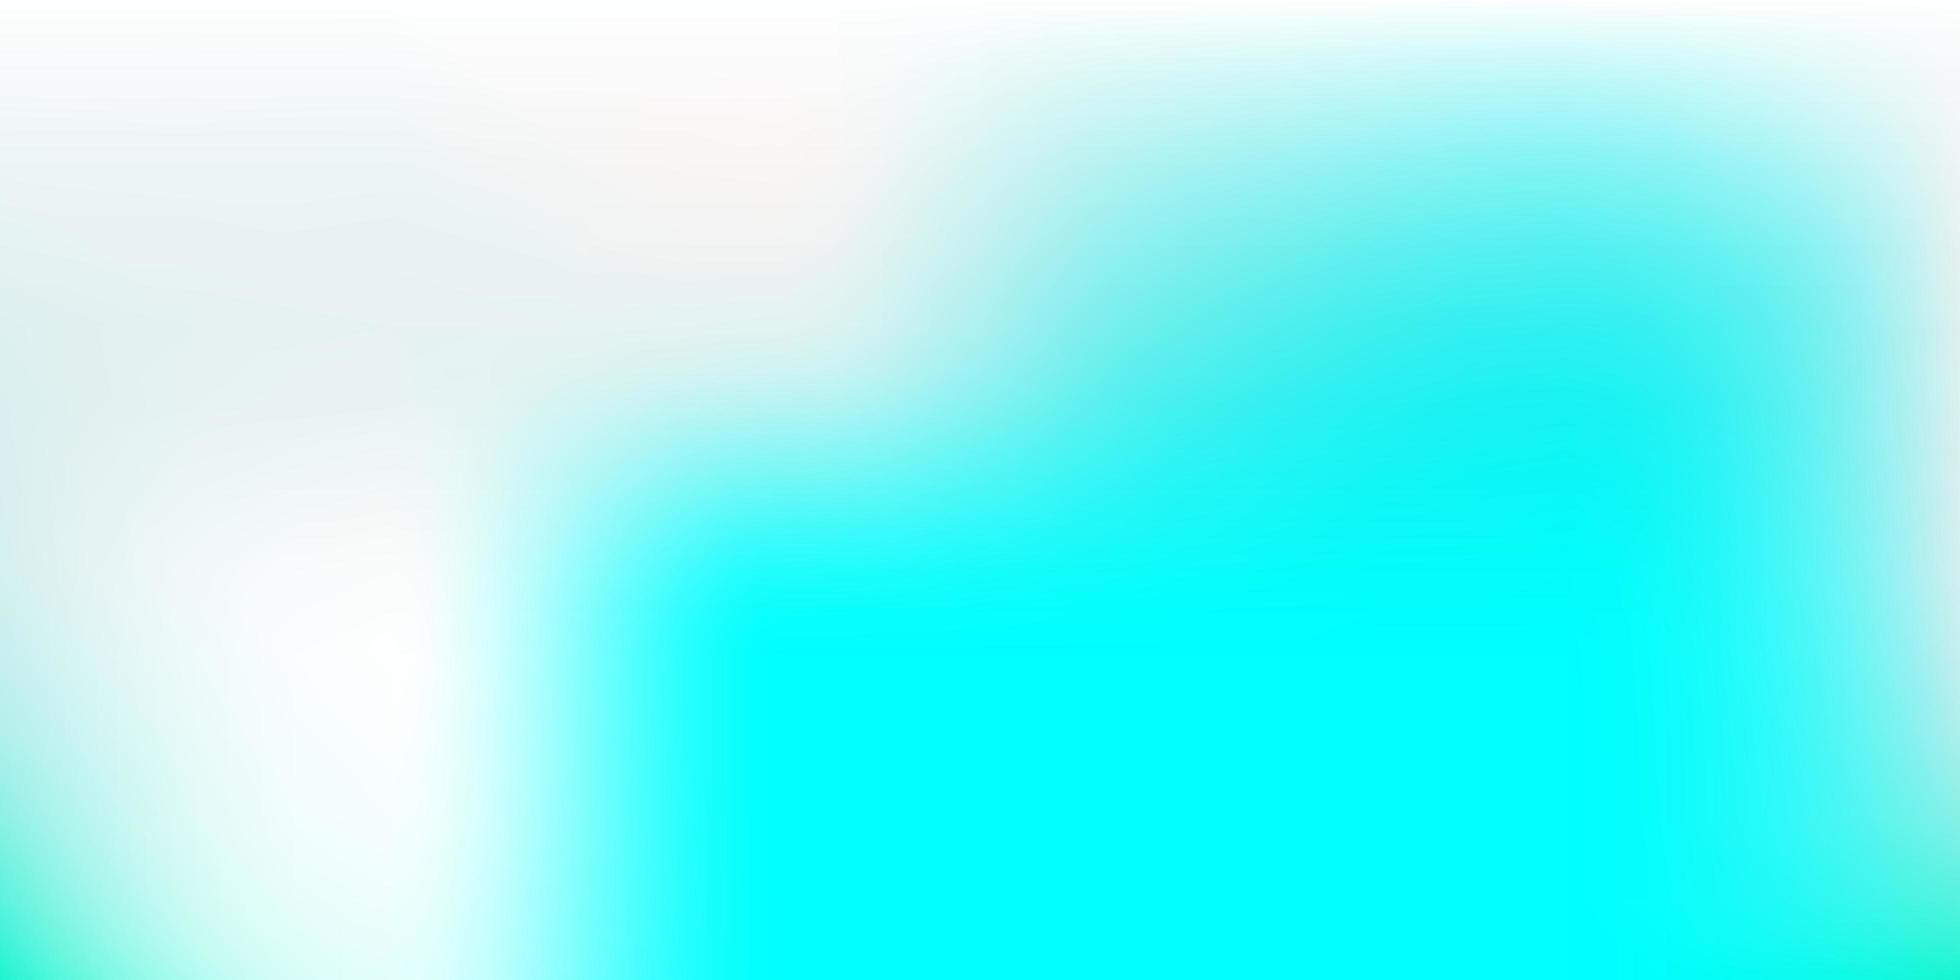 motif de flou vectoriel bleu clair